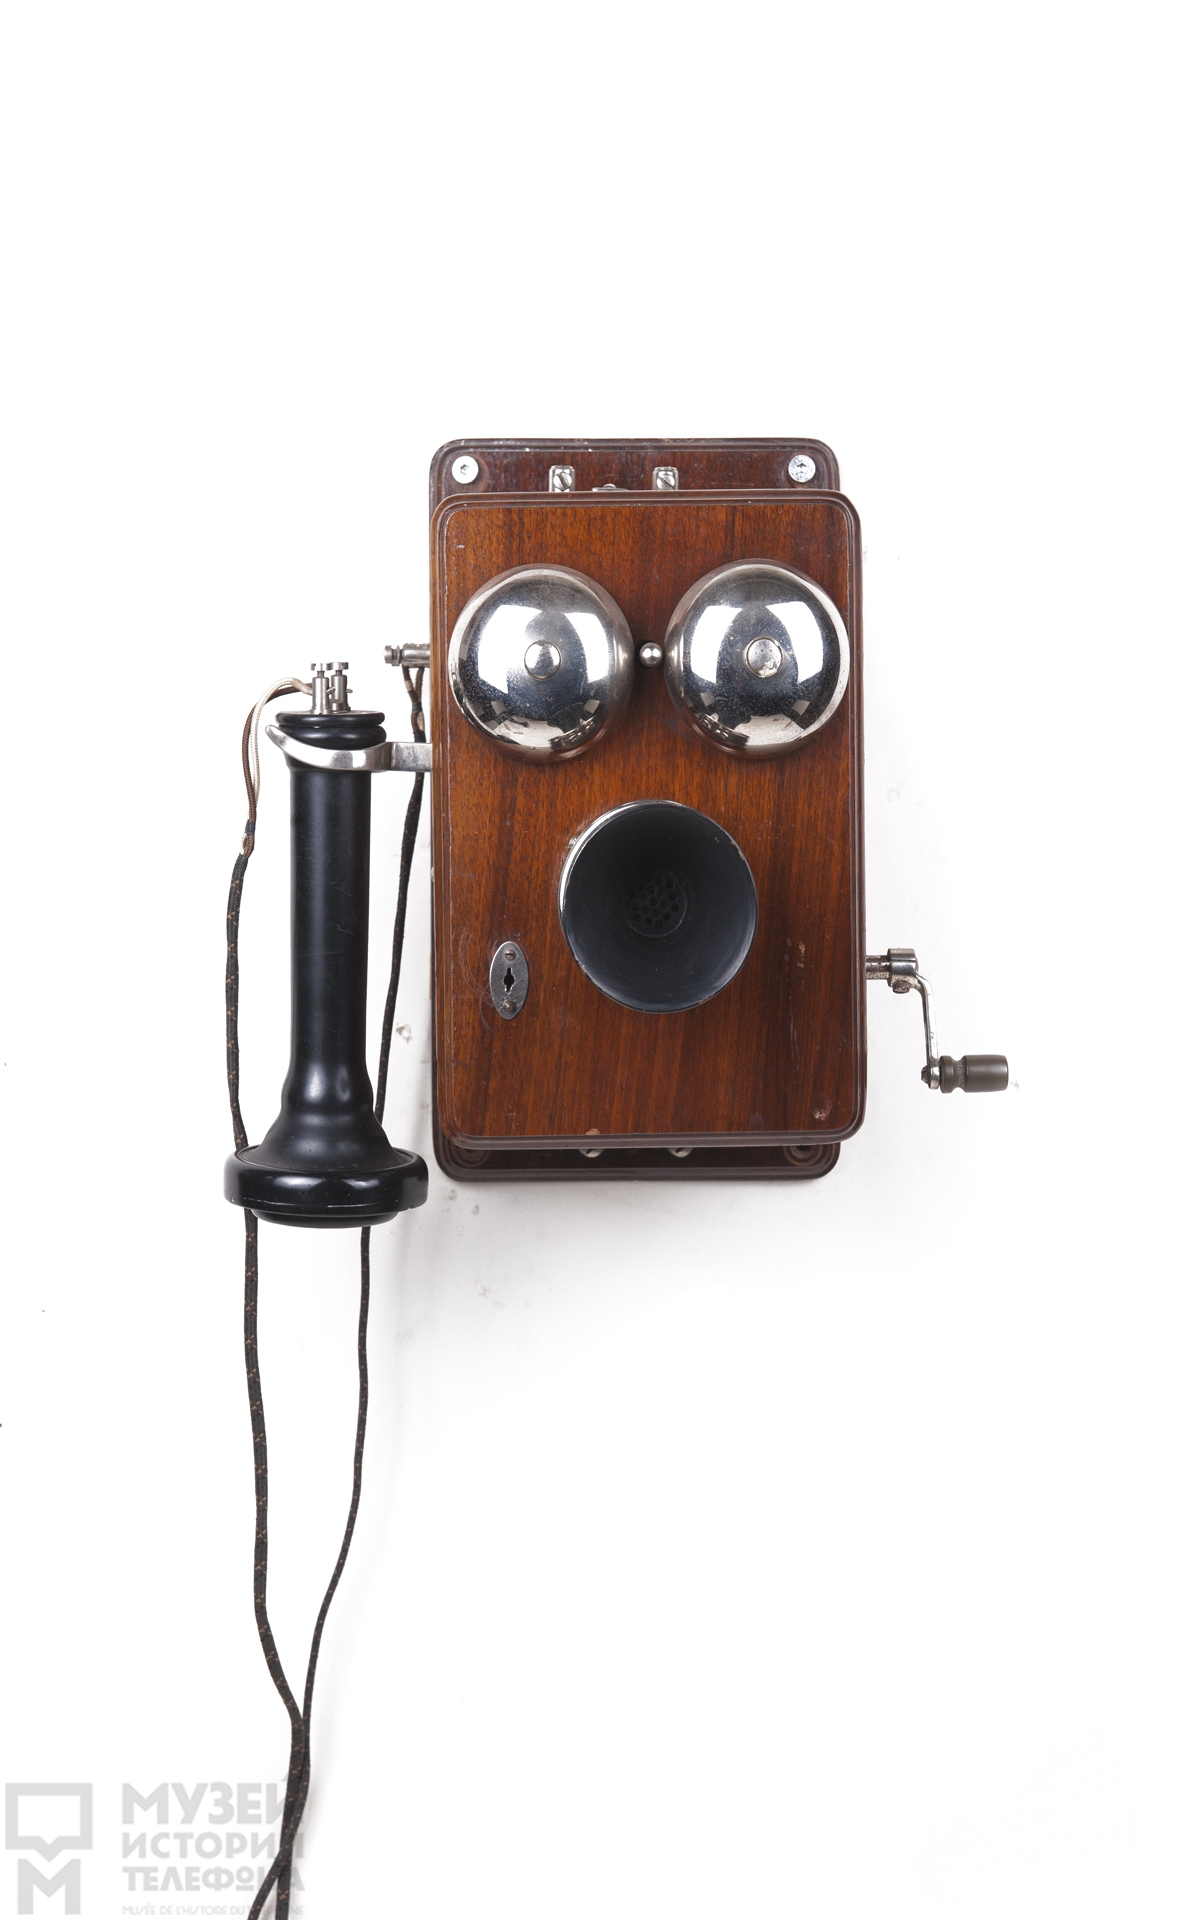 Телефонный аппарат индукторного вызова с микрофоном, наушником в виде трубки Белла и поляризованным звонком, деревянный корпус